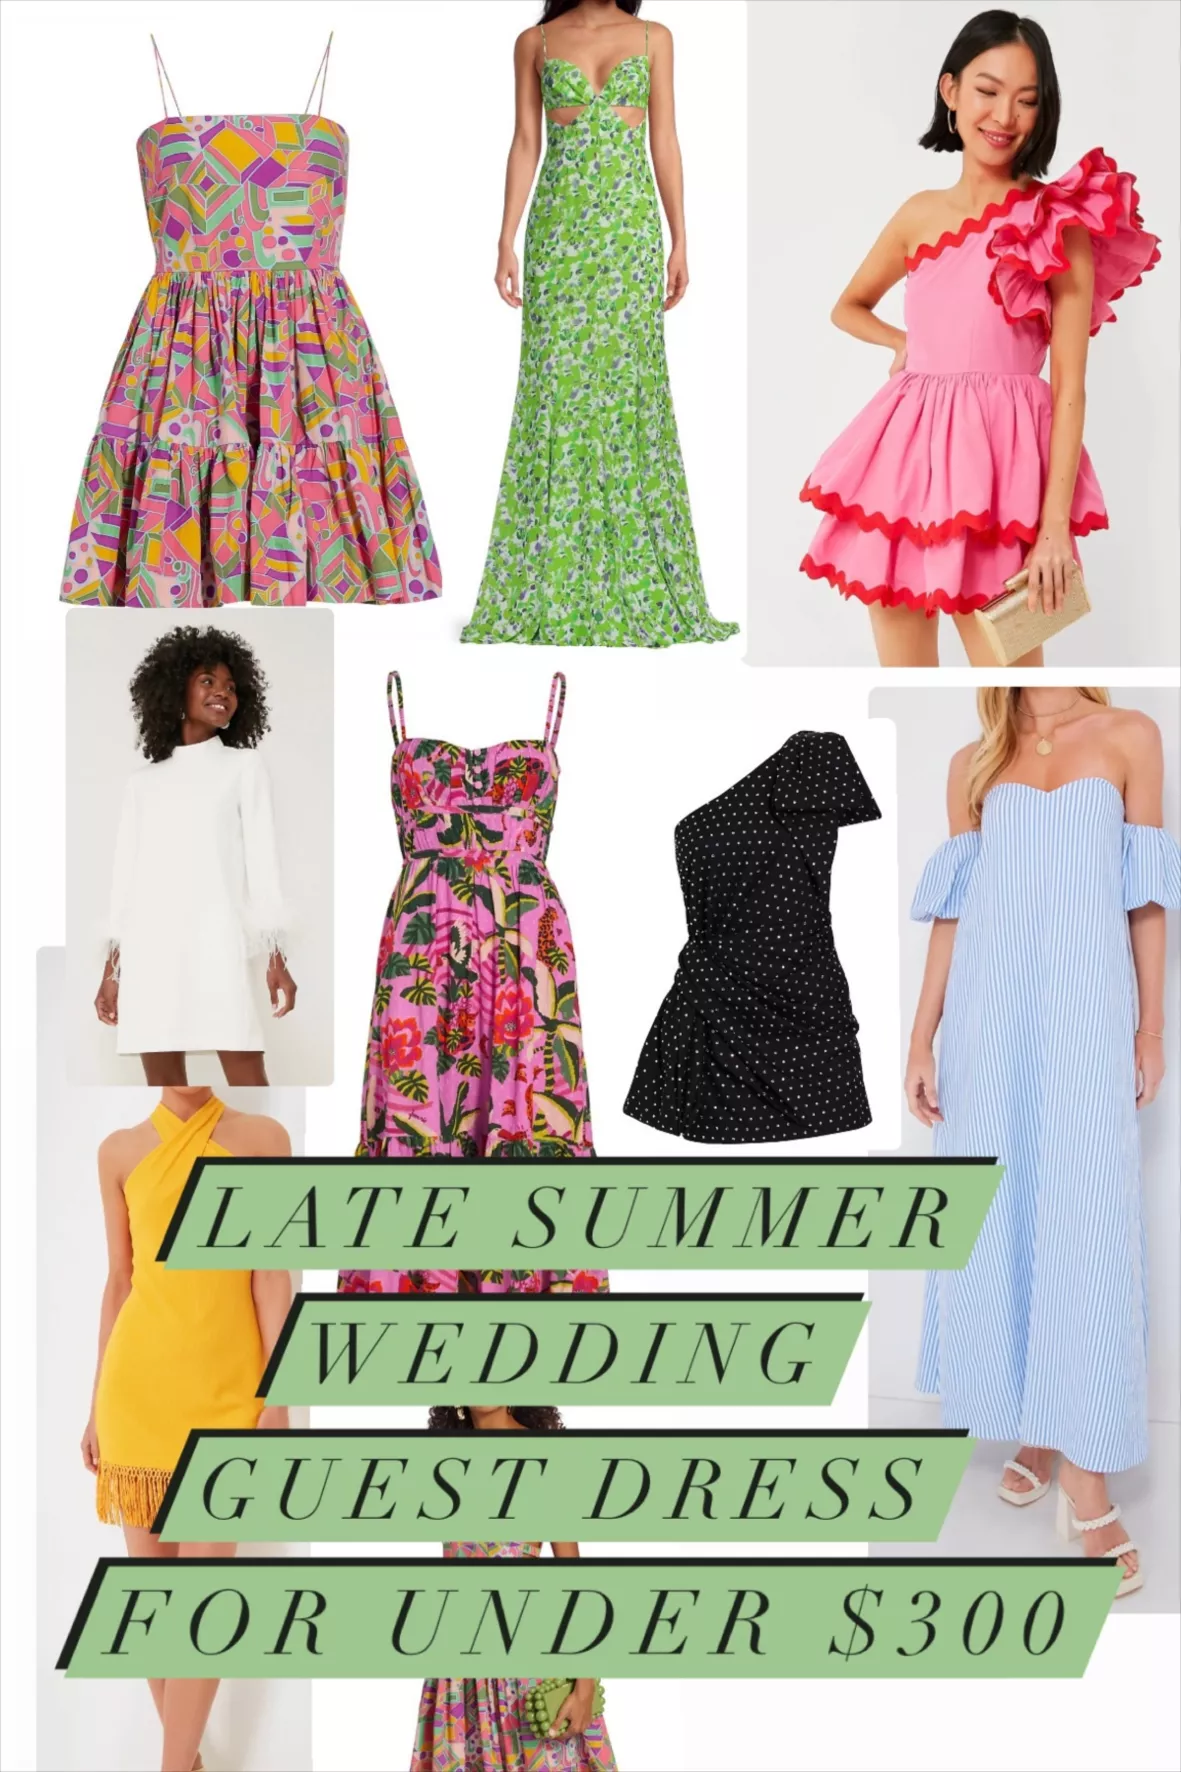 Guest Dress: Late Summer Wedding